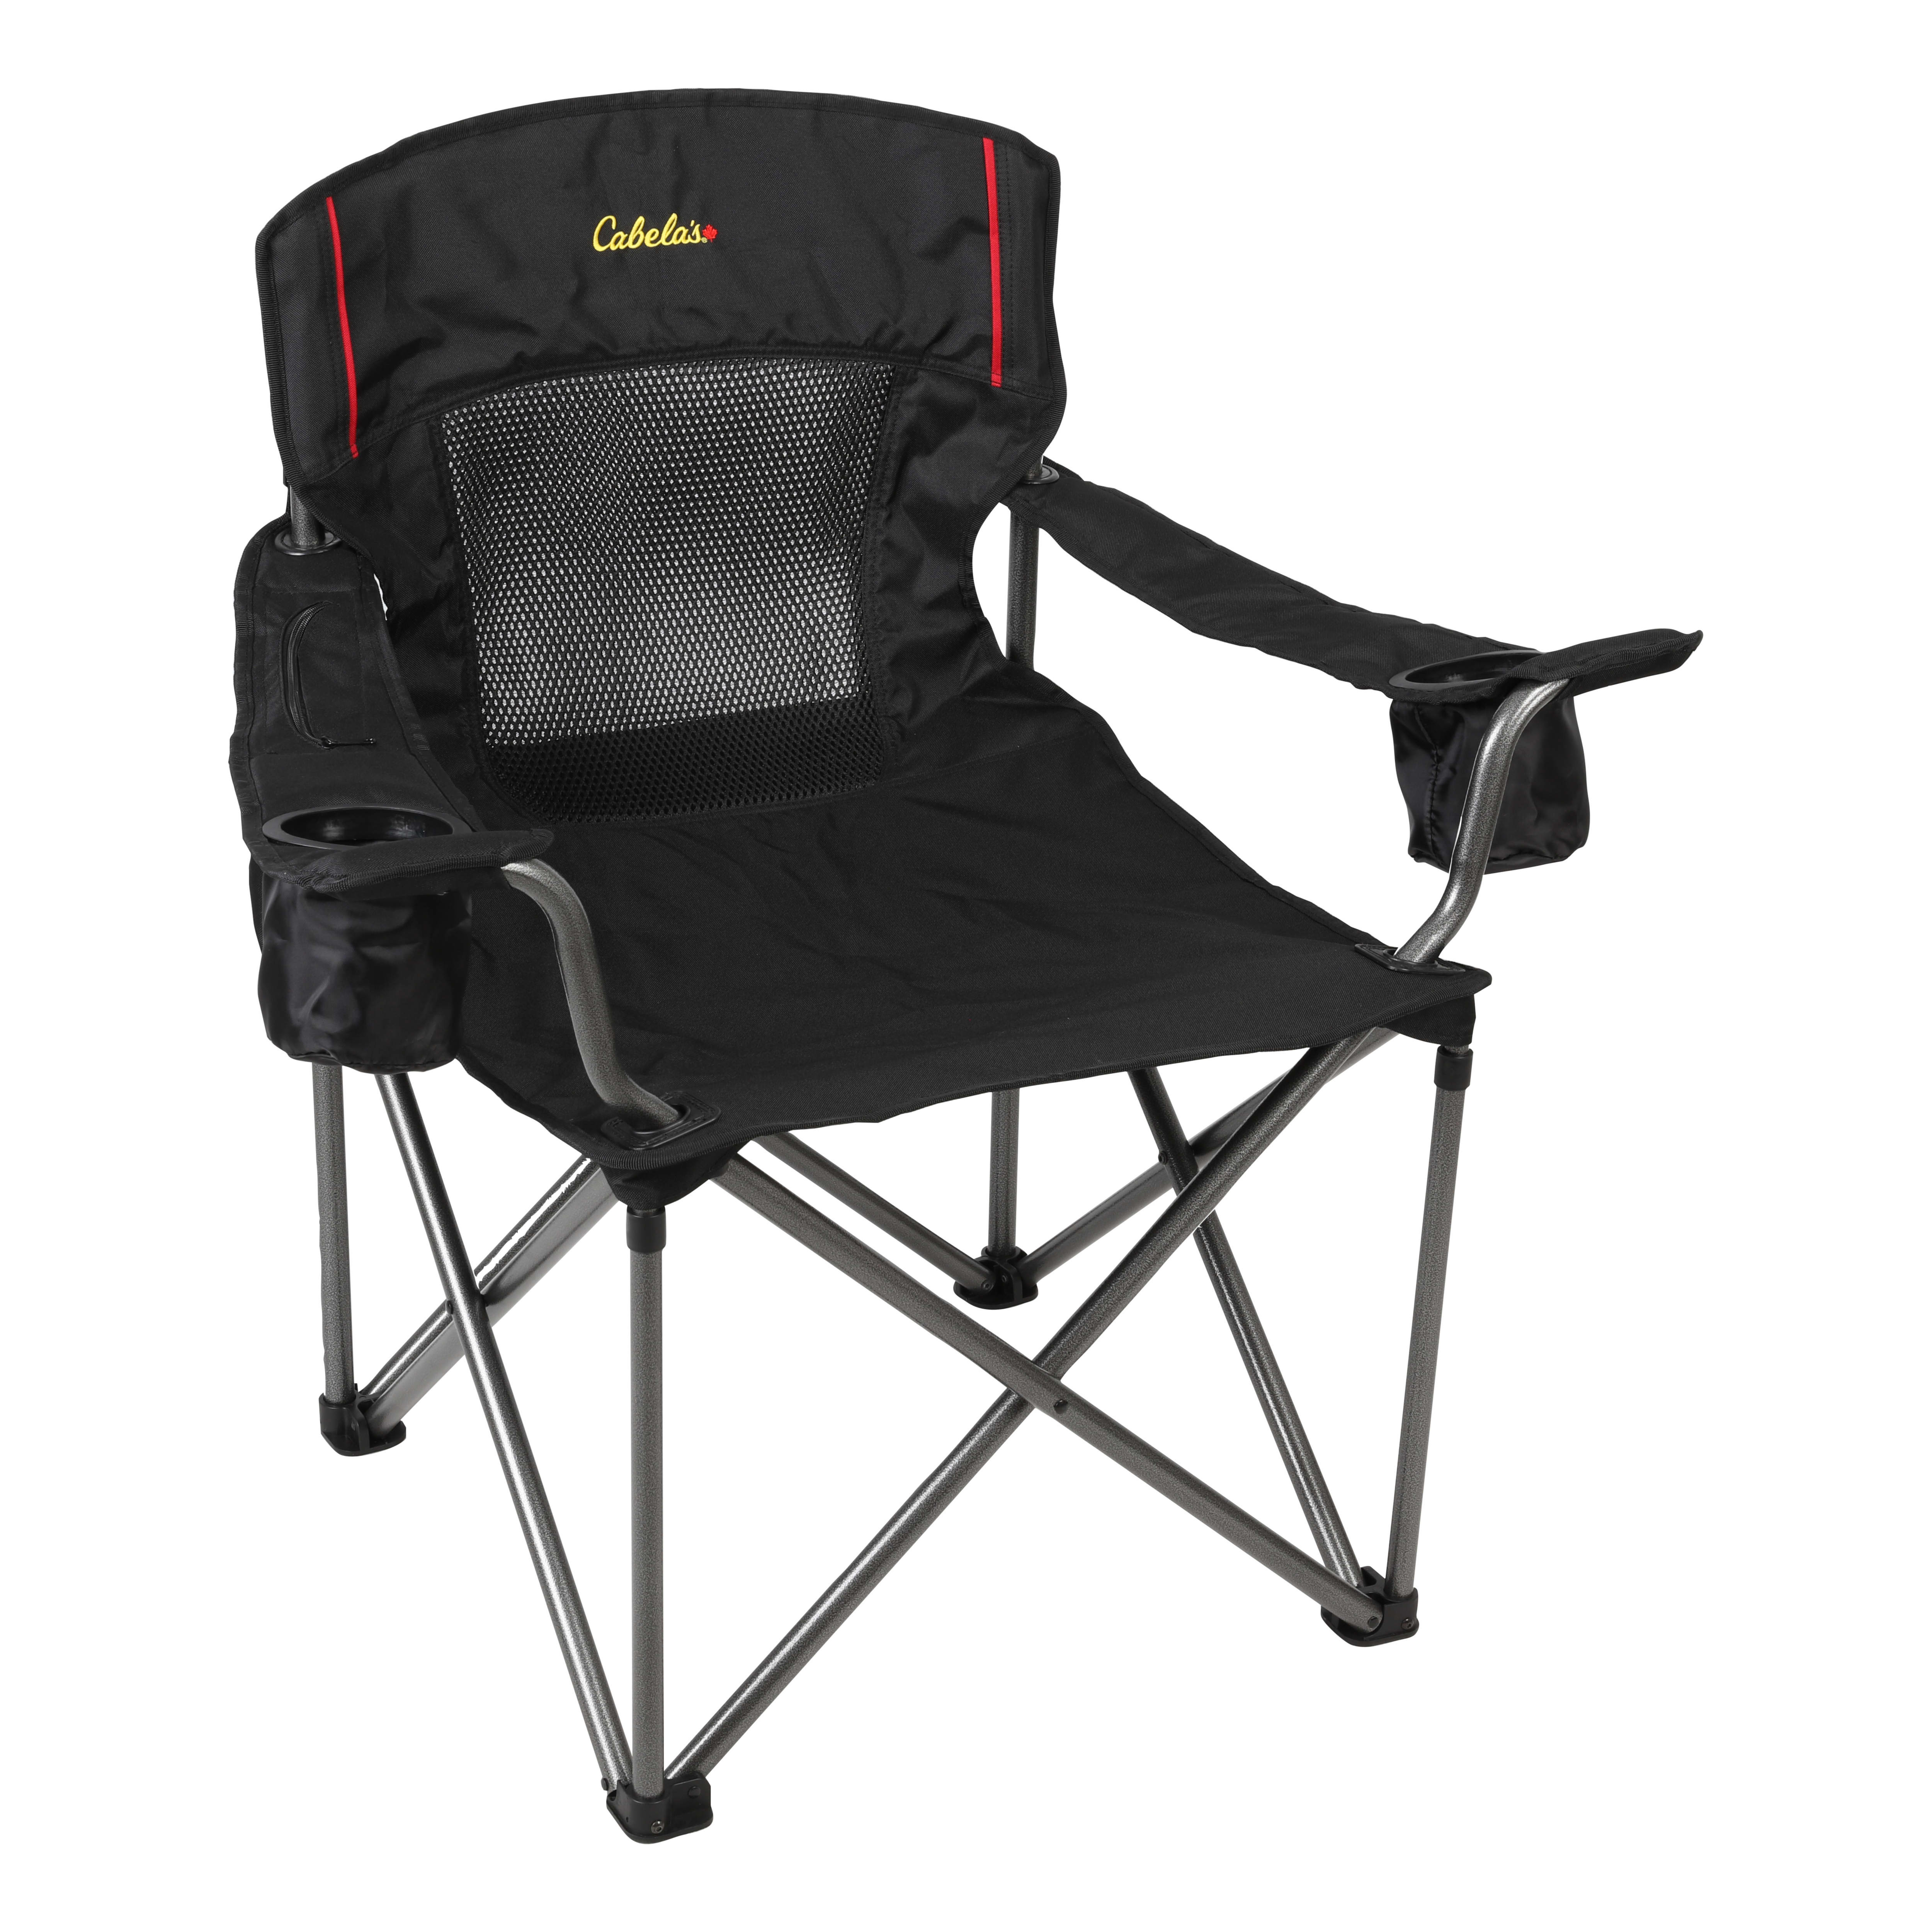 Cabela's XL Quad Chair